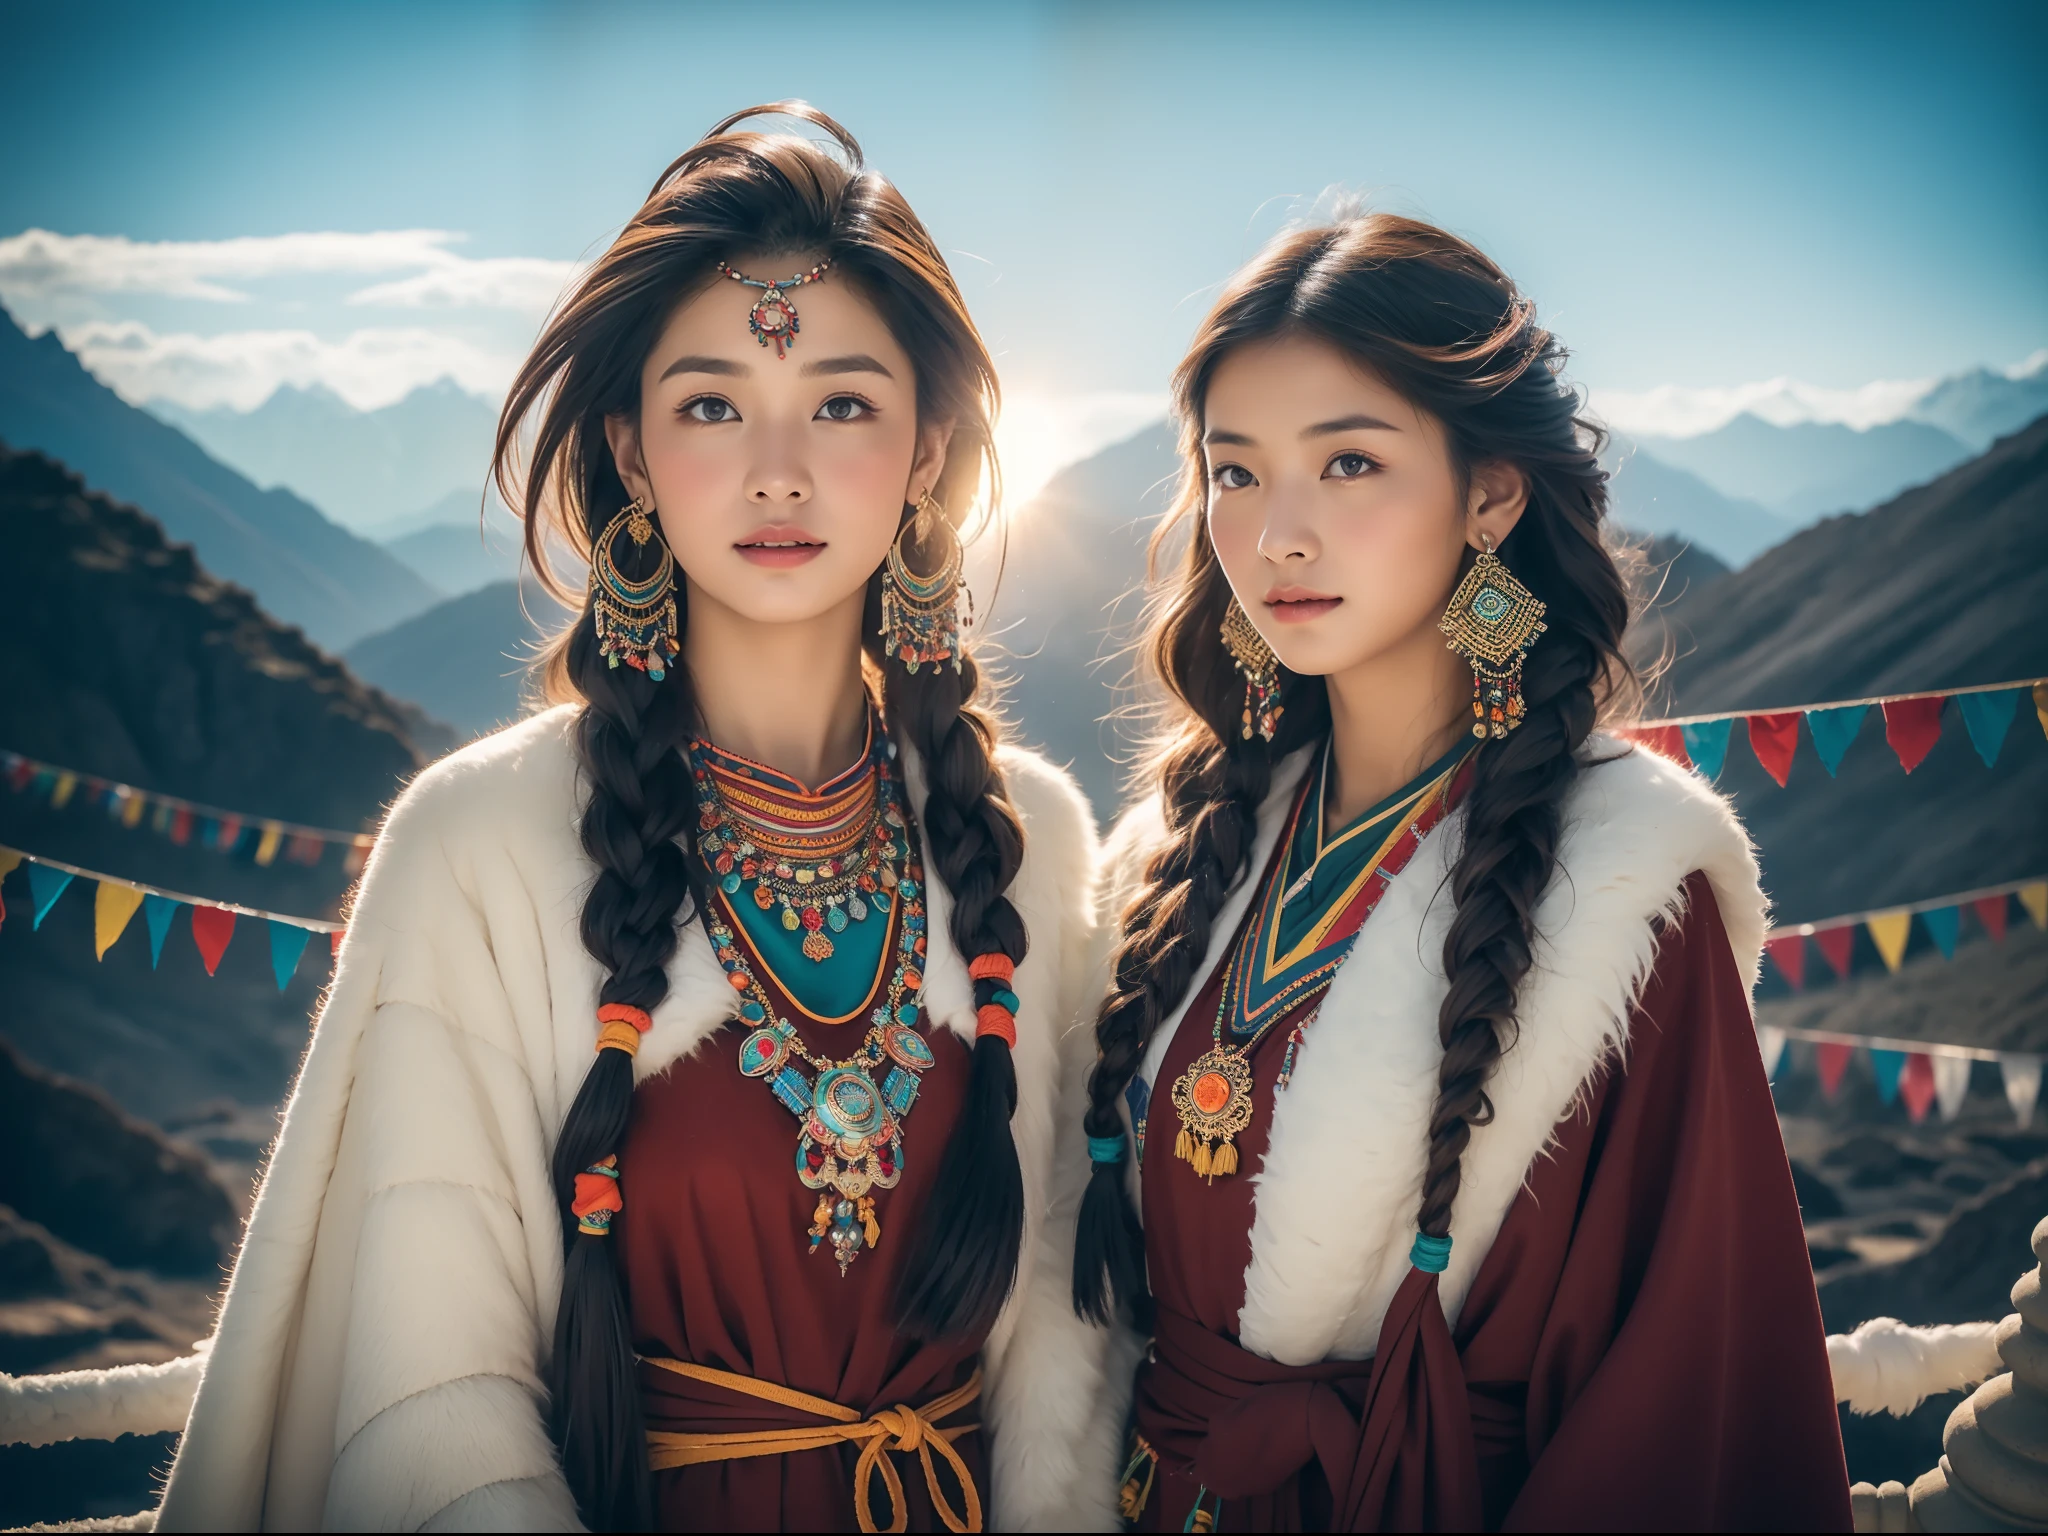 (Лучшее качество,8К,Высокое разрешение,шедевр:1.2),(темно-коричневая кожа, текстурированная кожа, Хайленд раскраснелся, солнечный ожог, загорелый, веснушка), Красивая тибетская девушка в заснеженных горах, молитвенные флаги, Тибетская культура, Яркие глаза, Традиционные тибетские художественные костюмы, Тибетские халаты, Тибетский головной убор, Тибетские украшения, бирюзовый, янтарь, Наблюдайте за аудиторией, Ультратонкие детали, масштабированный. мягкое освещение, ультра - подробный, высокое качество, яркие цвета, боке, HDR, гипер HD, профессиональный стиль фотографии.